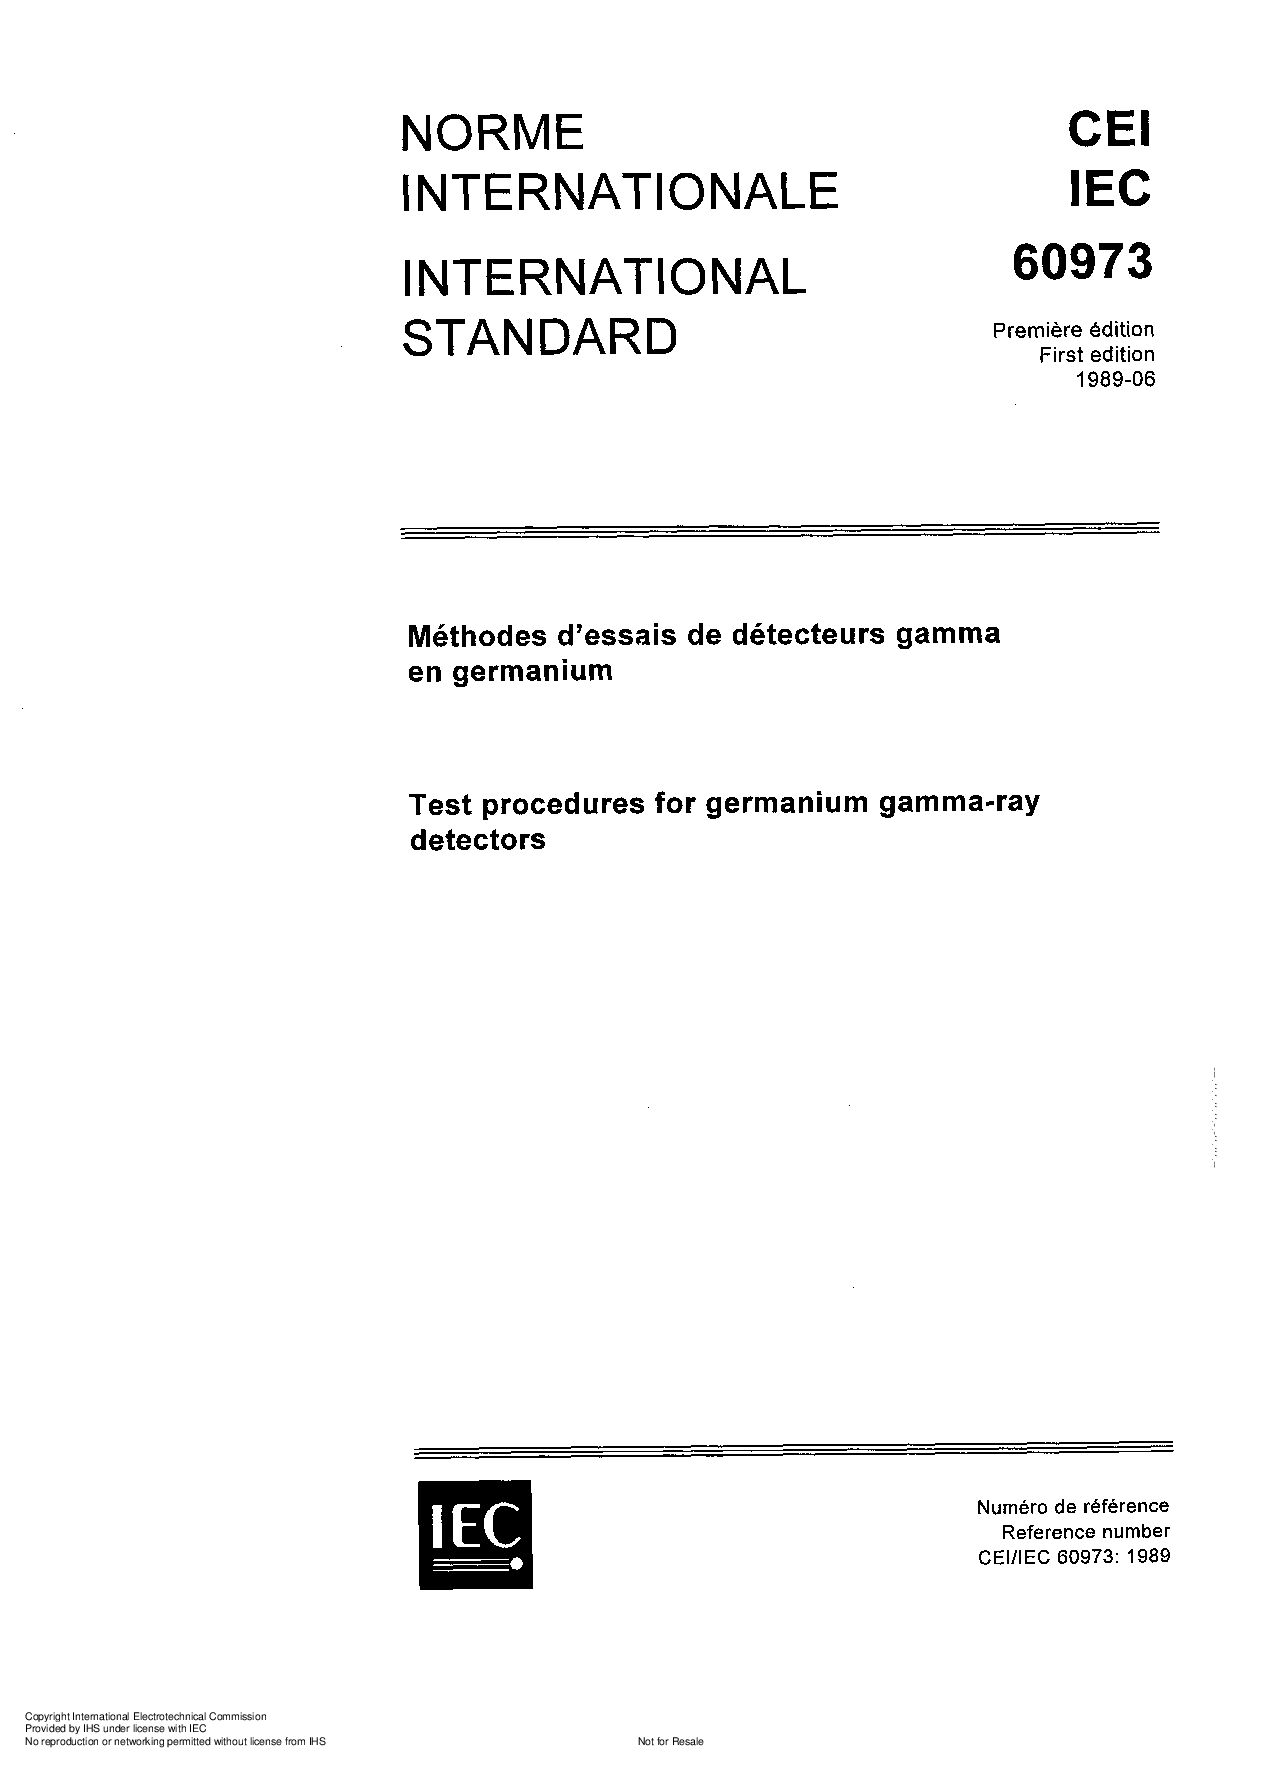 IEC 60973-1989